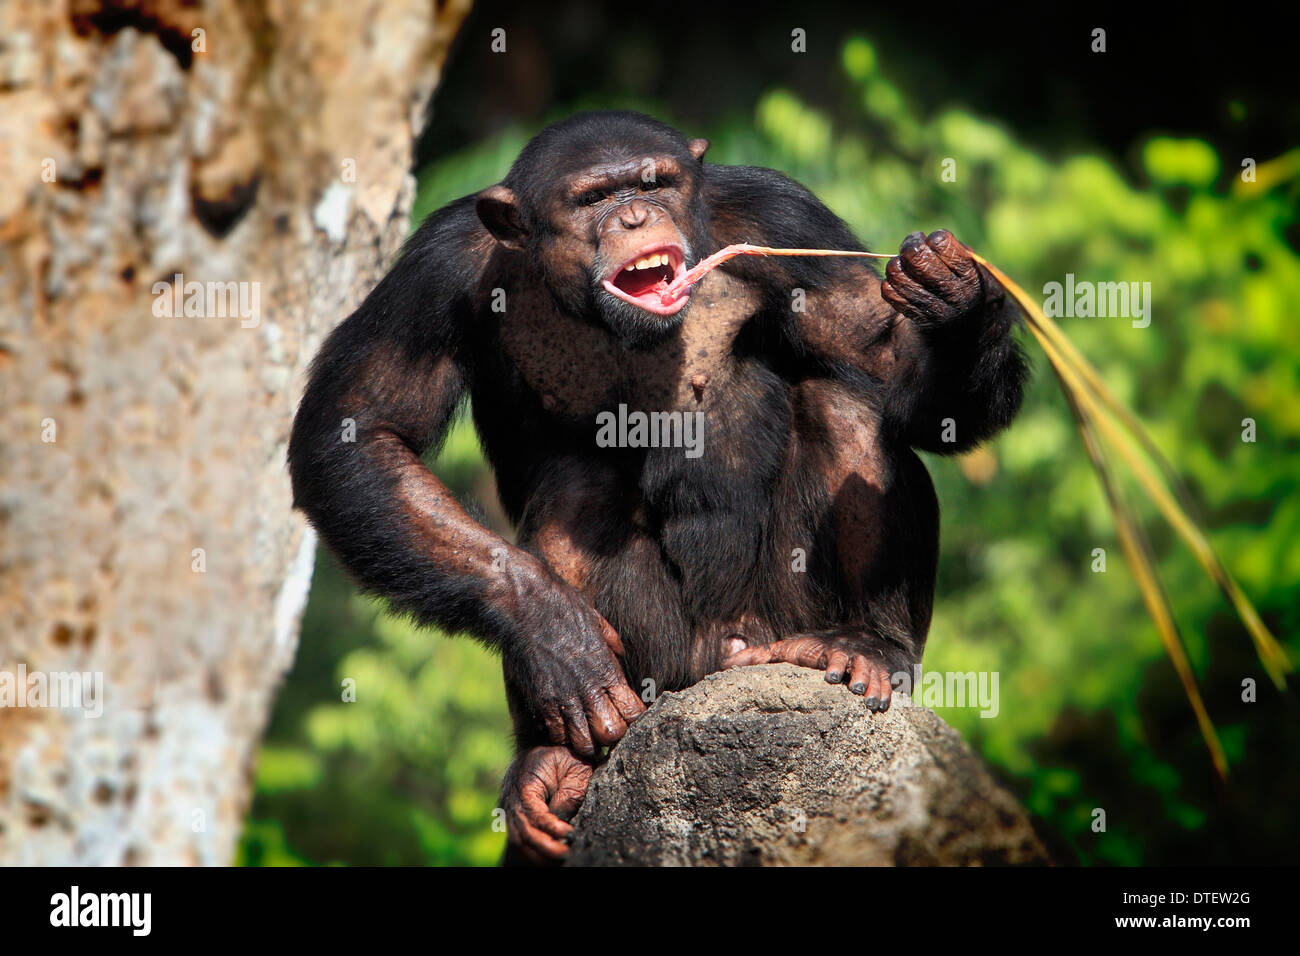 Chimpanzee / (Pan troglodytes) / Chimpy Stock Photo